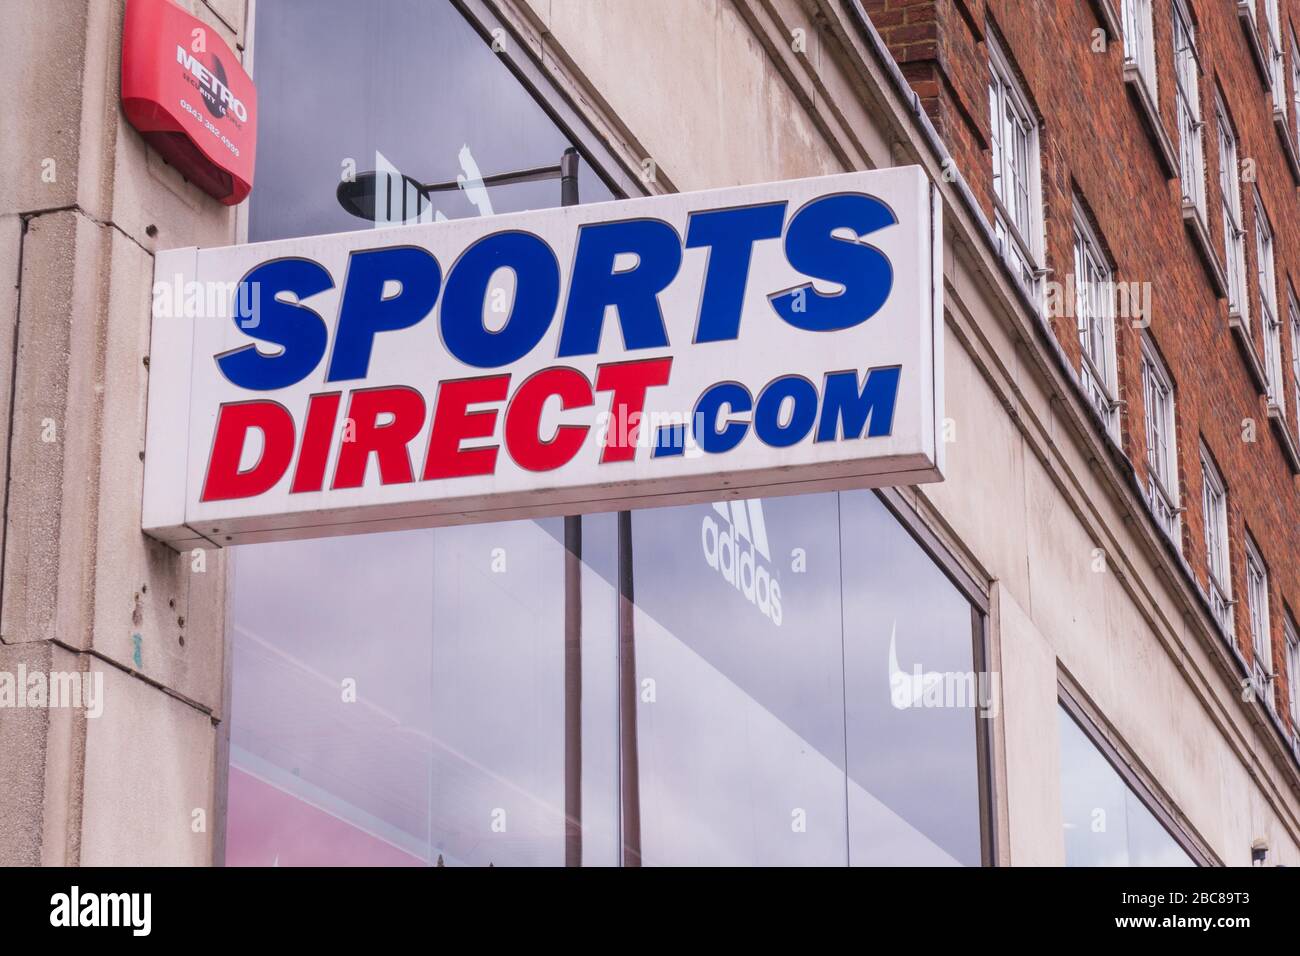 Sports Direct, minorista británico de productos deportivos de alta calle - logotipo exterior / señalización - Londres Foto de stock